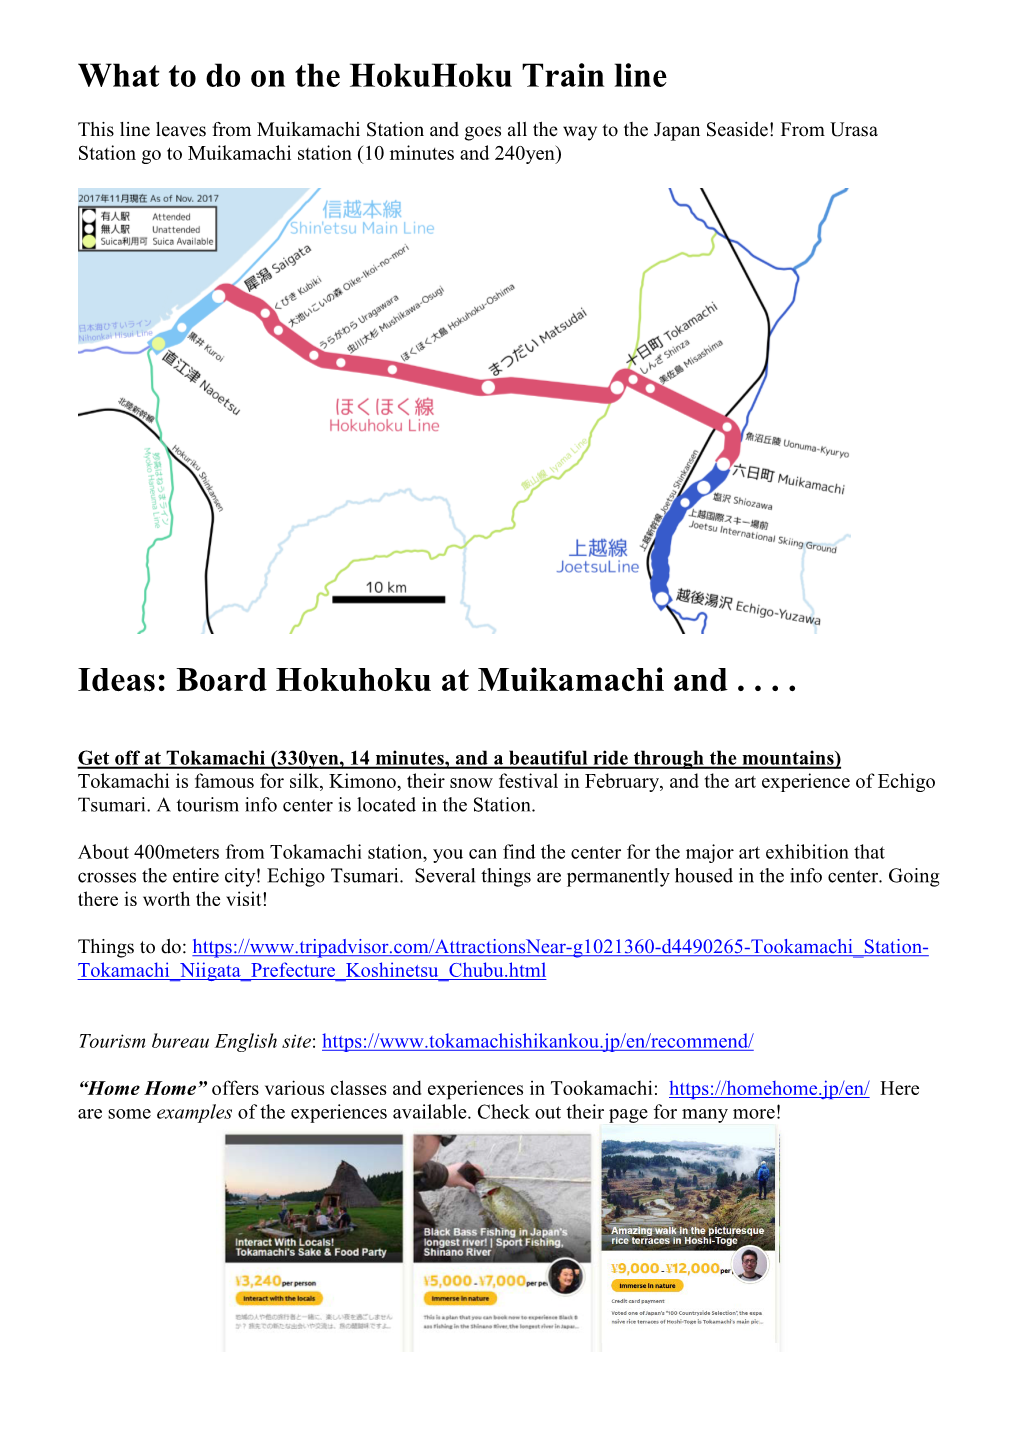 What to Do on the Hokuhoku Train Line Ideas: Board Hokuhoku At